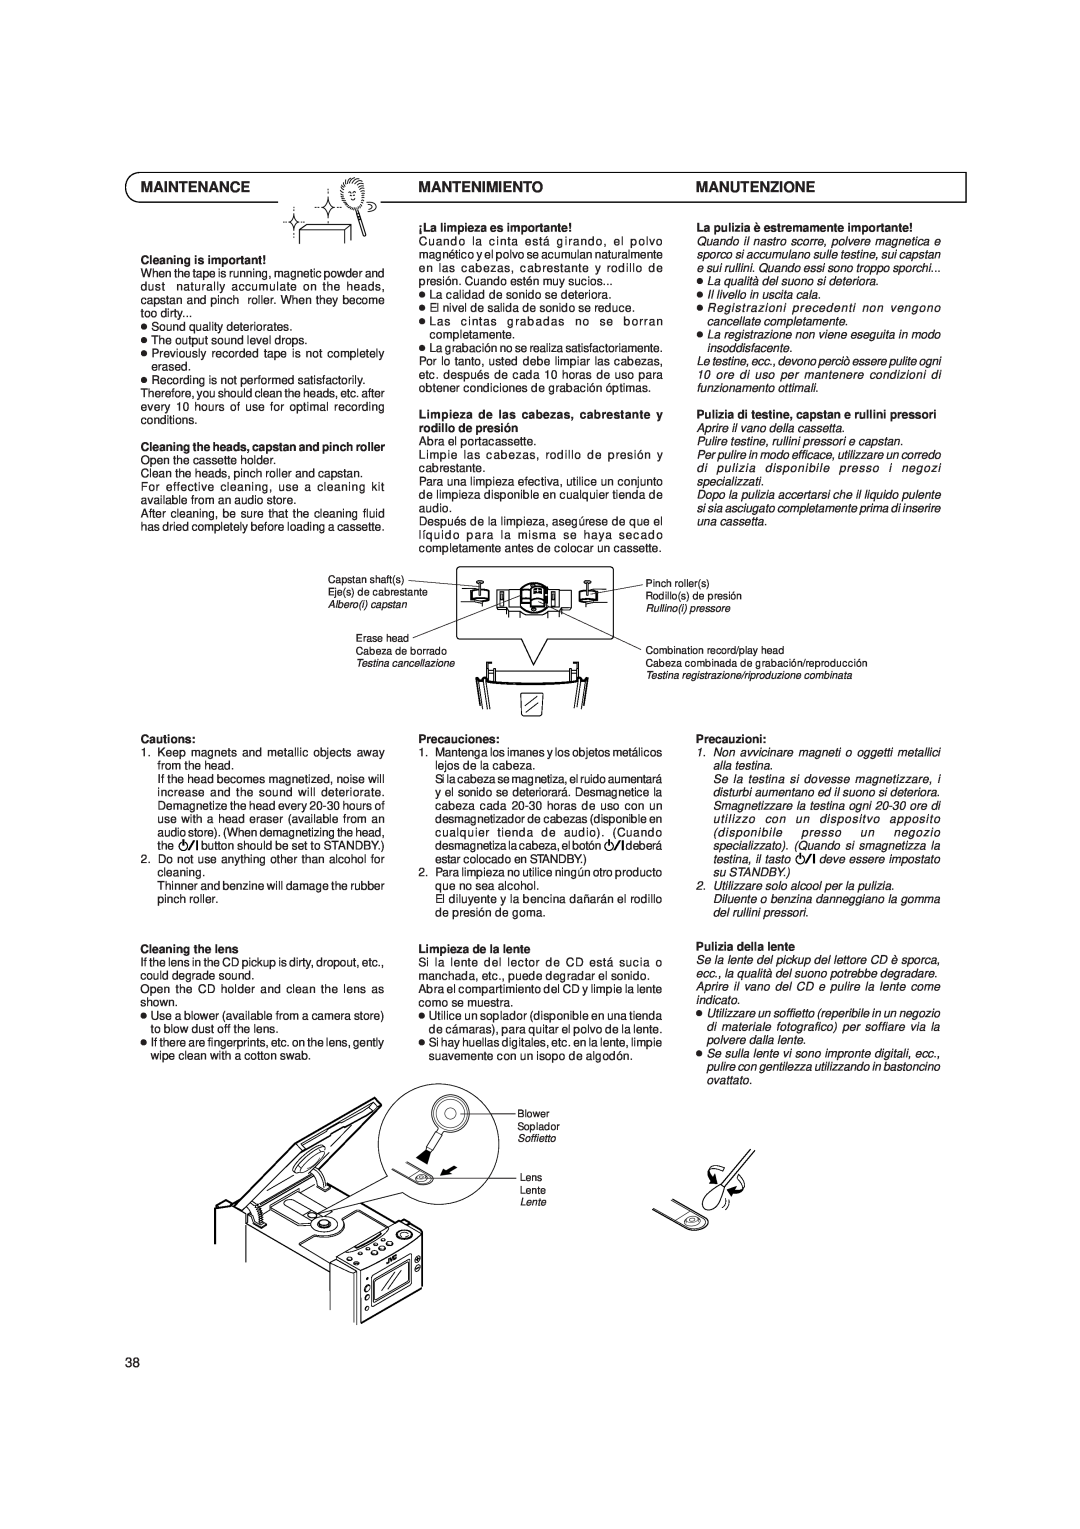 JVC LVT0059-001A, UX-T250R manual Maintenance, Mantenimiento, Manutenzione 